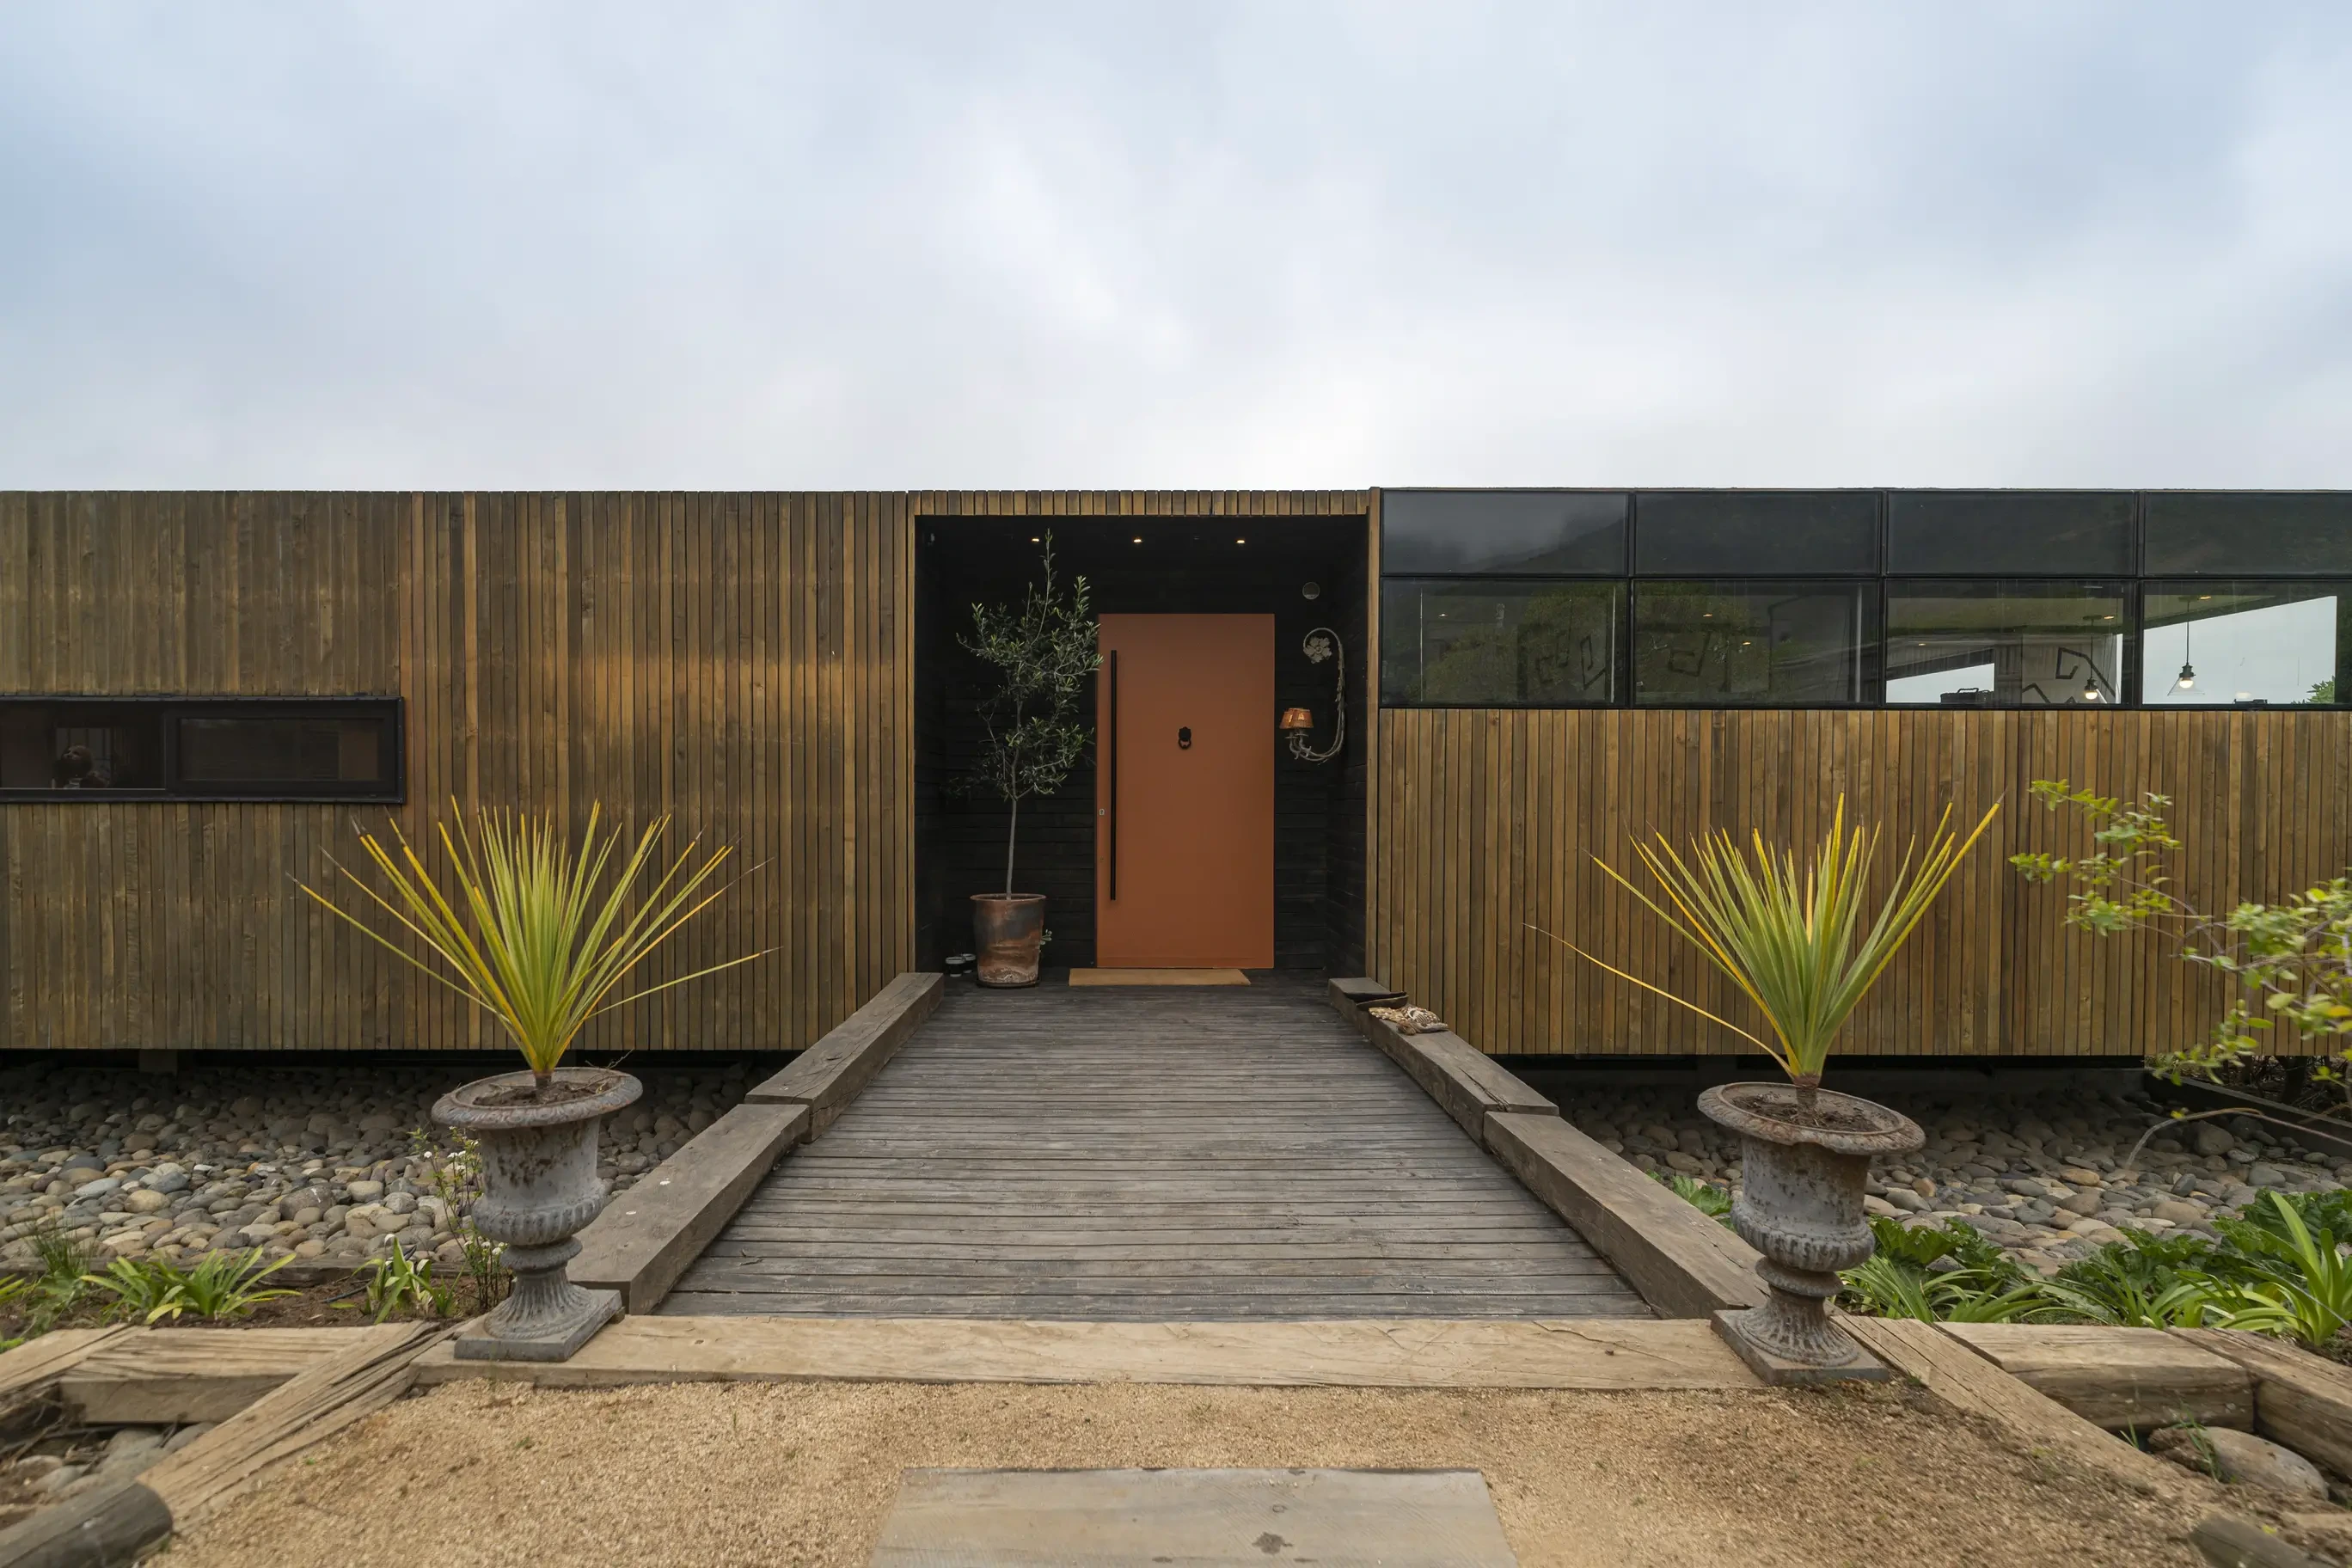 House Image of Casa en arriendo en Zapallar: "Diseño a Medida", Una Experiencia Única en Vacaciones